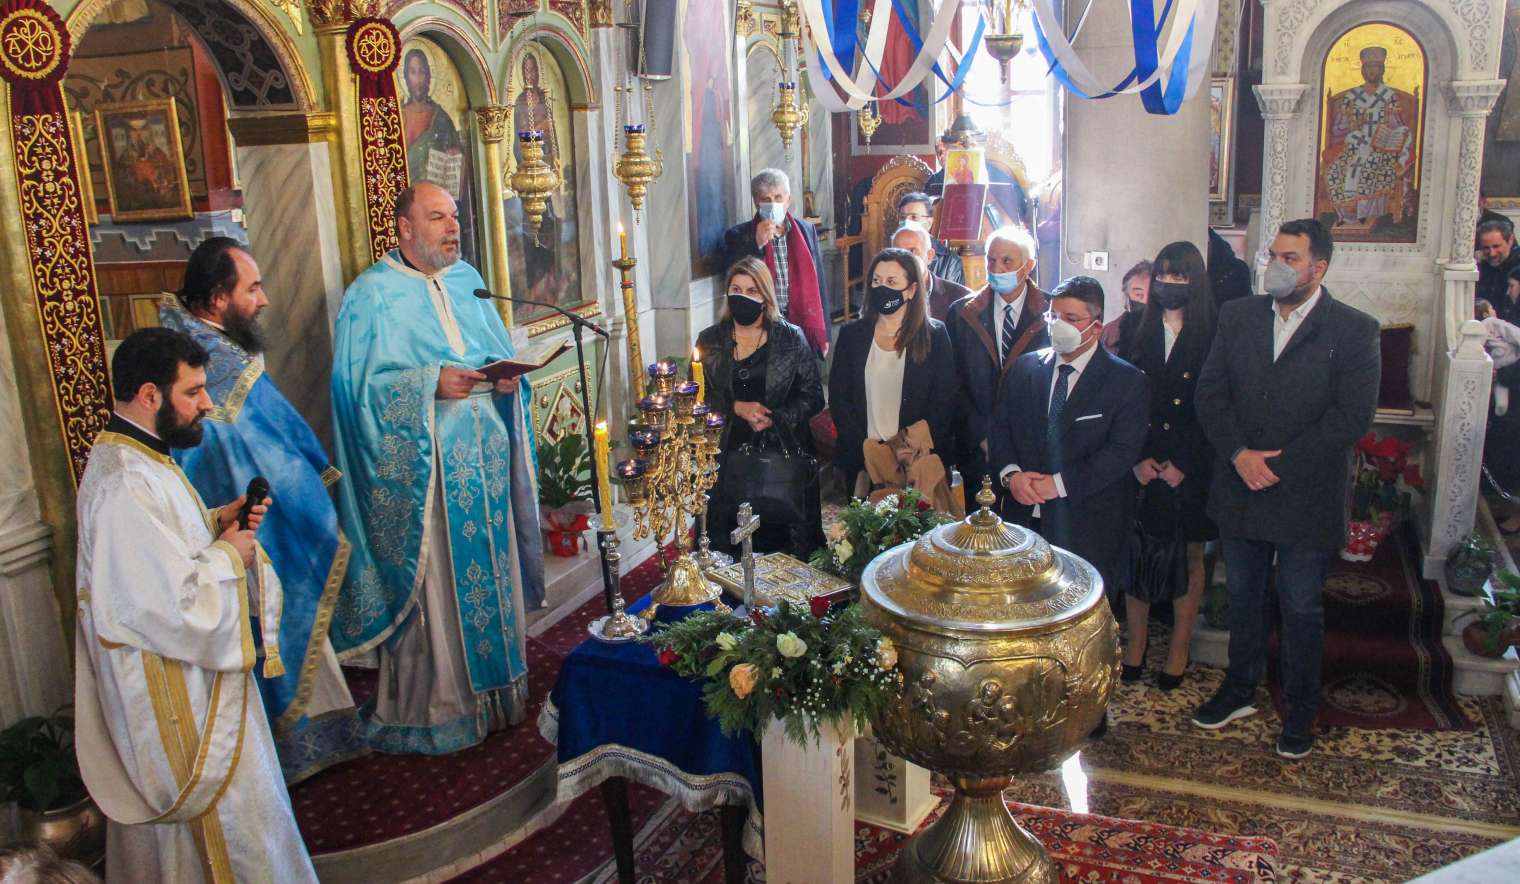 Με ιδιαίτερη λαμπρότητα και θρησκευτική κατάνυξη εορτάστηκαν τα Θεοφάνεια στις Αχαρνές